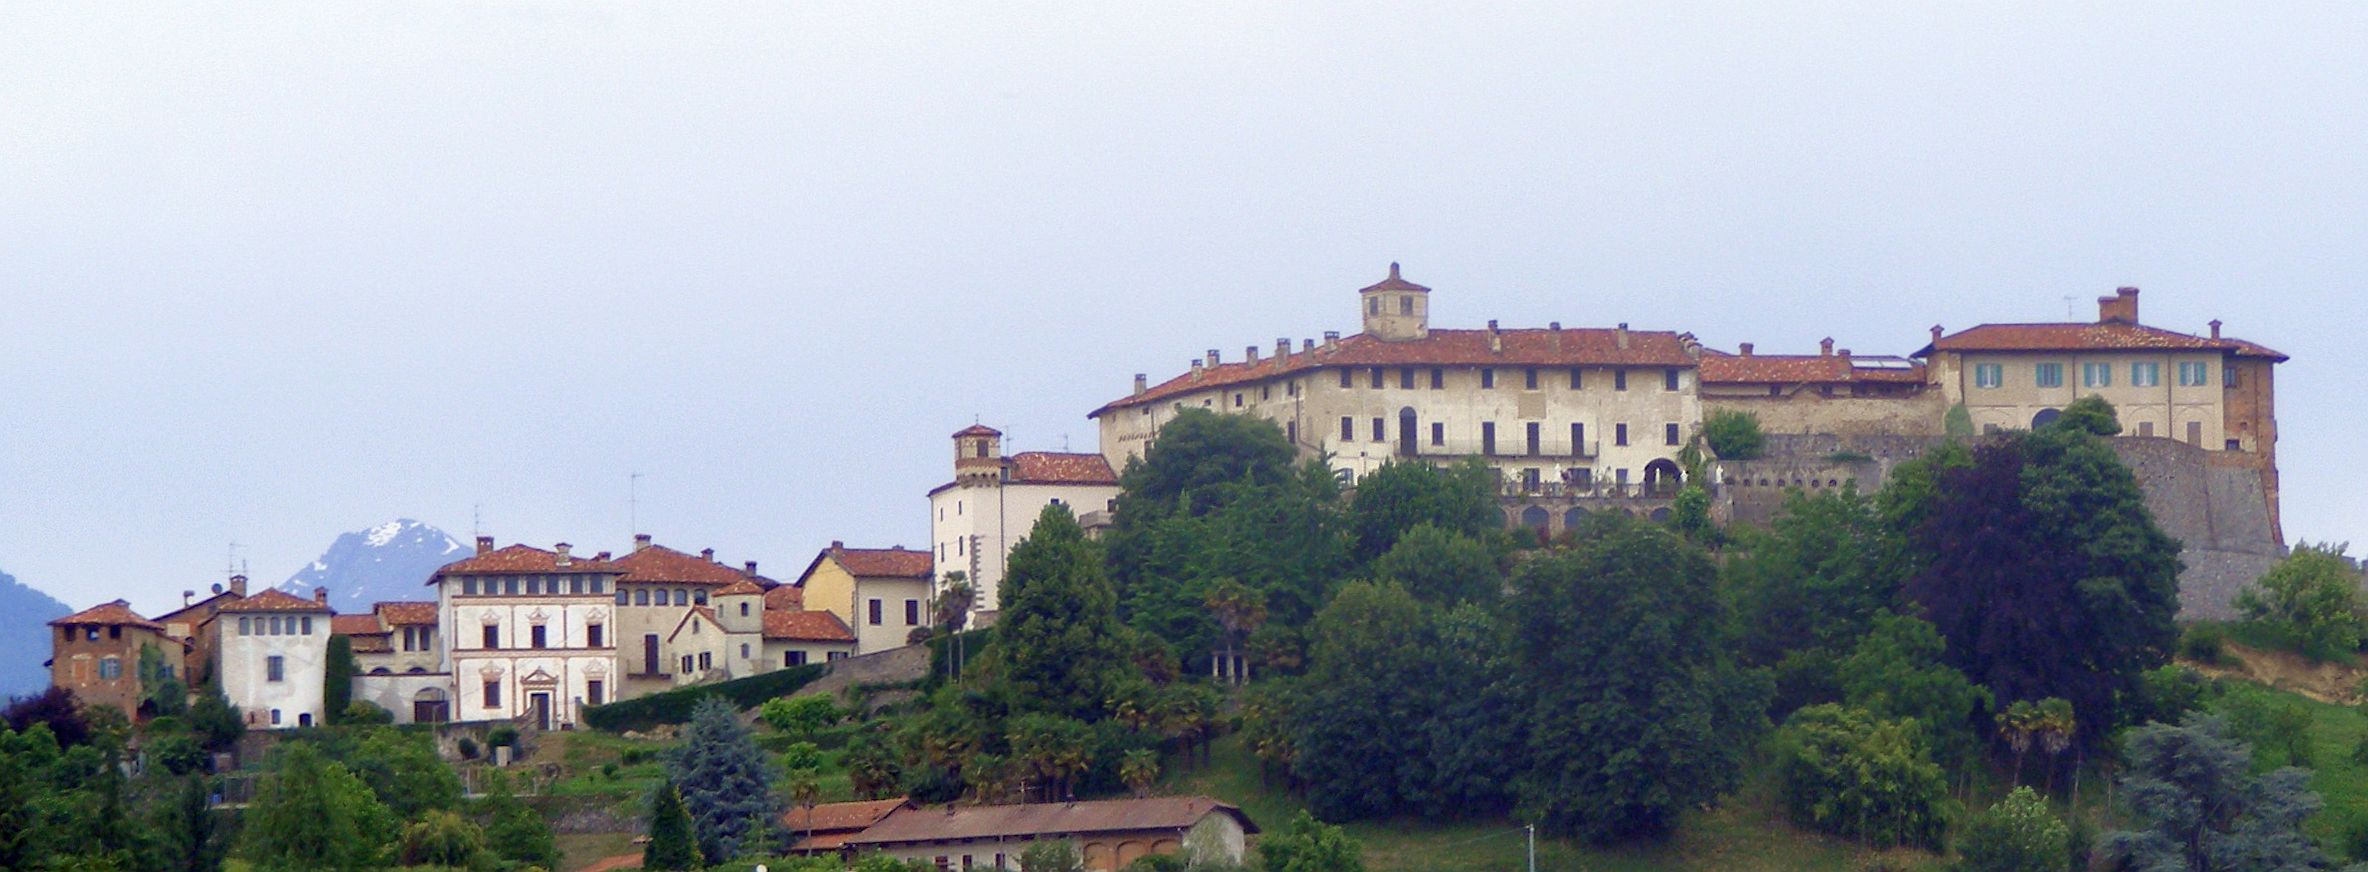 Het kasteel van Valdengo (Foto: WikiCommons)